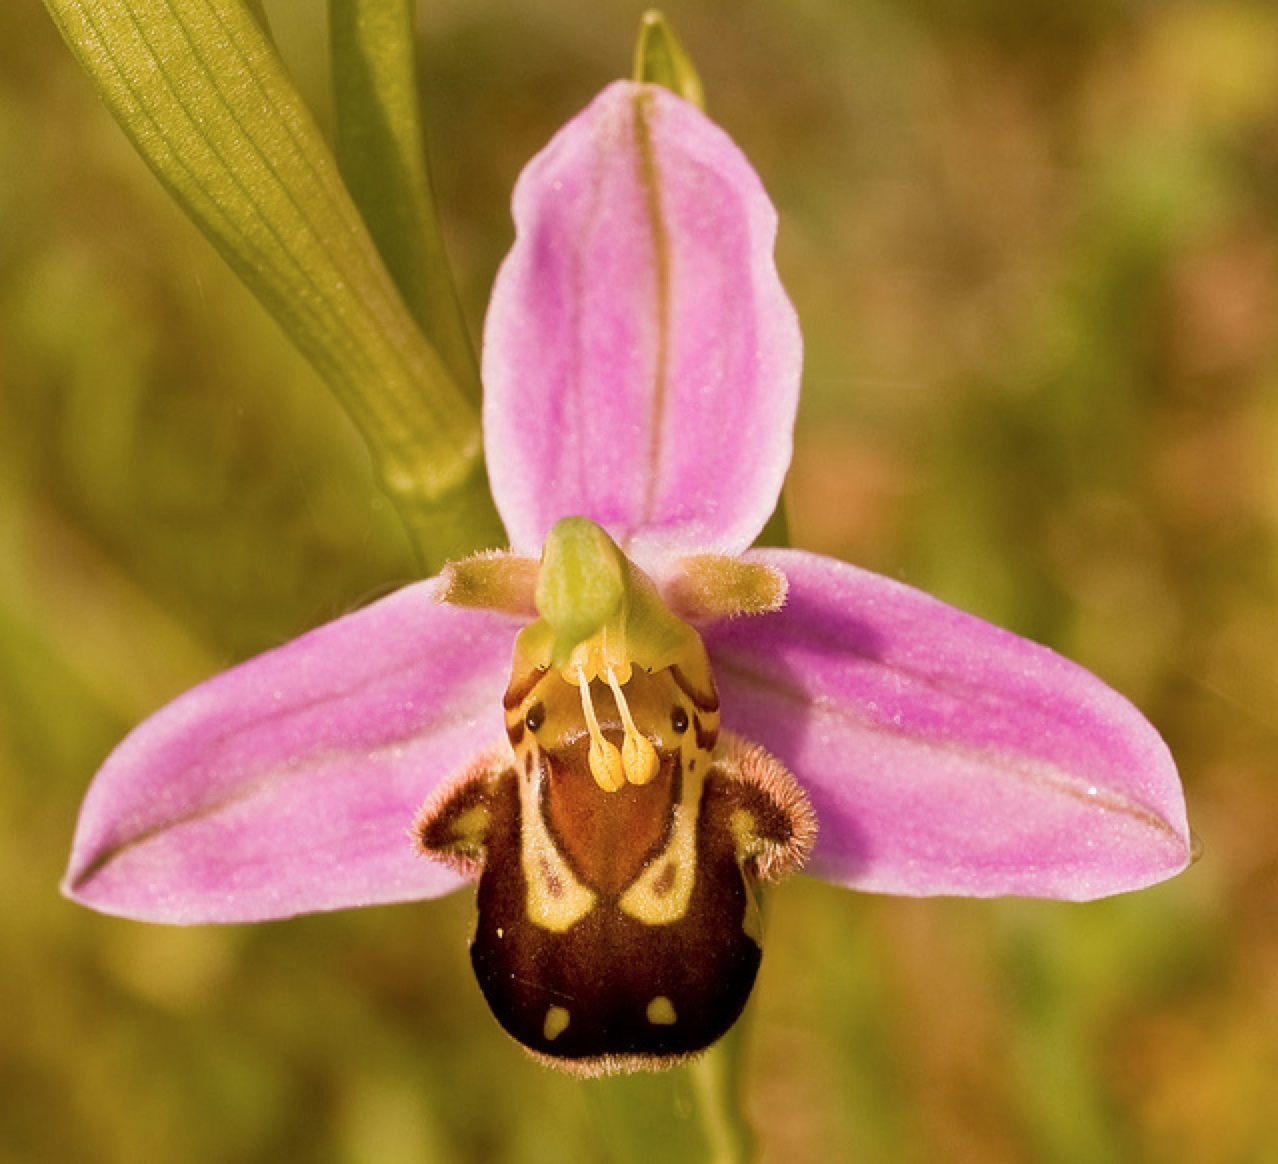 As fotos retratam uma orquídea com um centro amarelo brilhante e pétalas brancas.